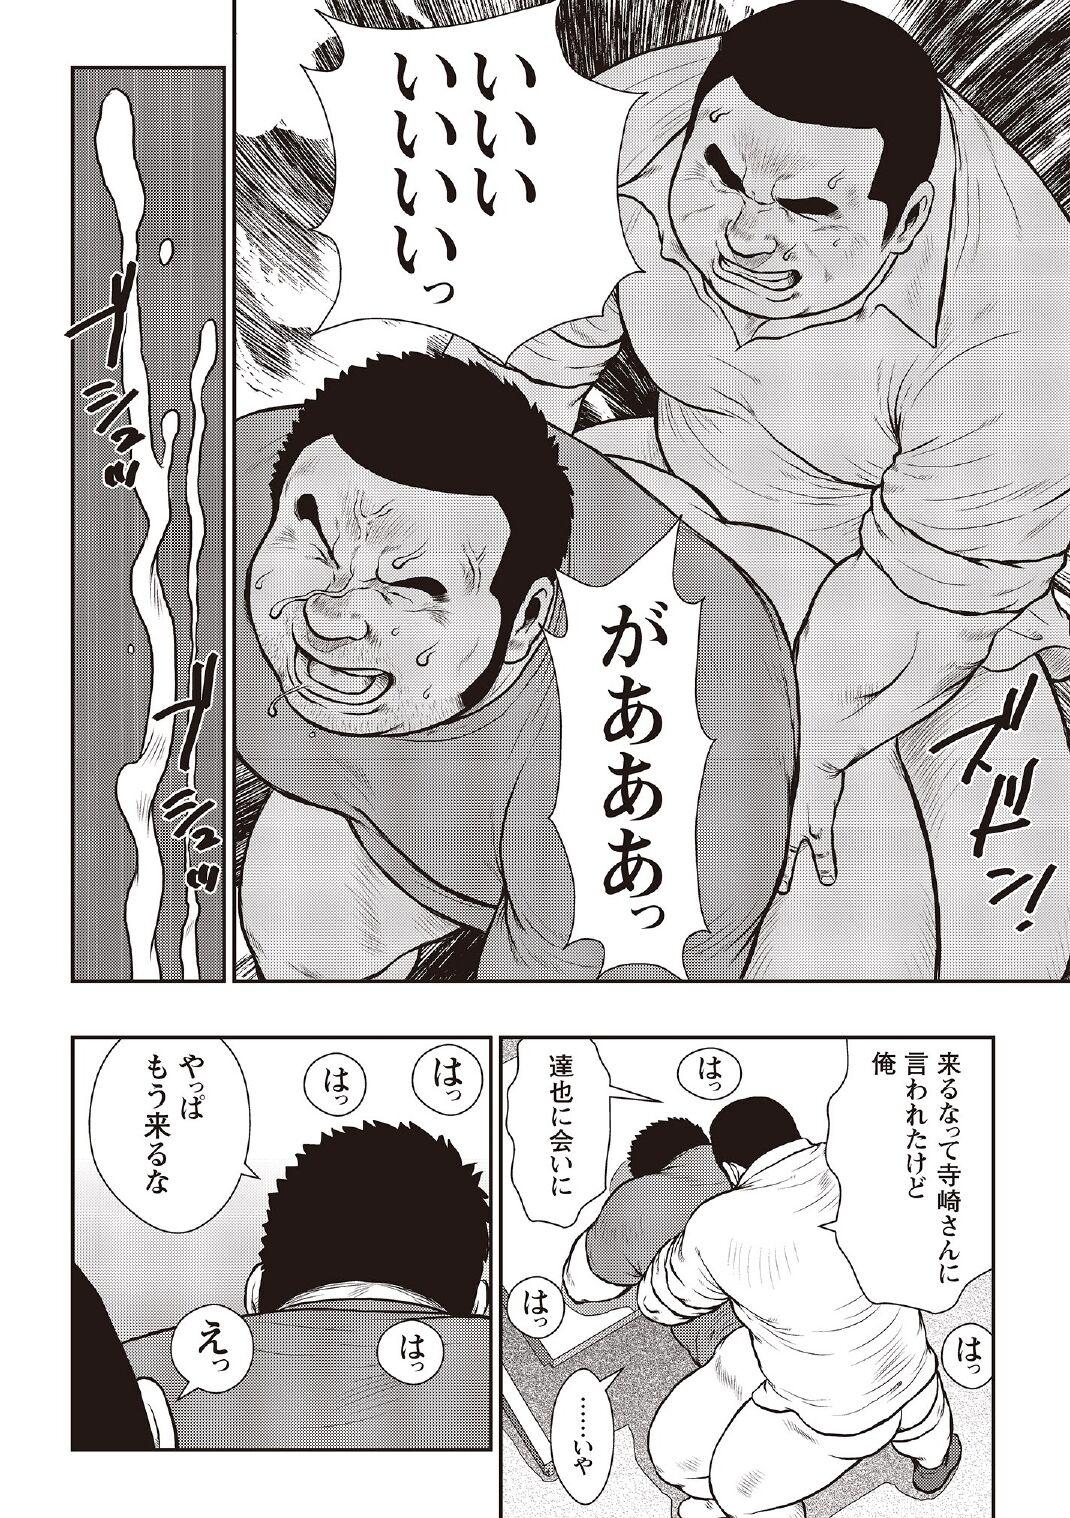 [Ebisubashi Seizou] Ebisubashi Seizou Tanpen Manga Shuu 2 Fuuun! Danshi Ryou [Bunsatsuban] PART 3 Bousou Hantou Taifuu Zensen Ch. 3 ~ Ch. 5 [Digital] 63